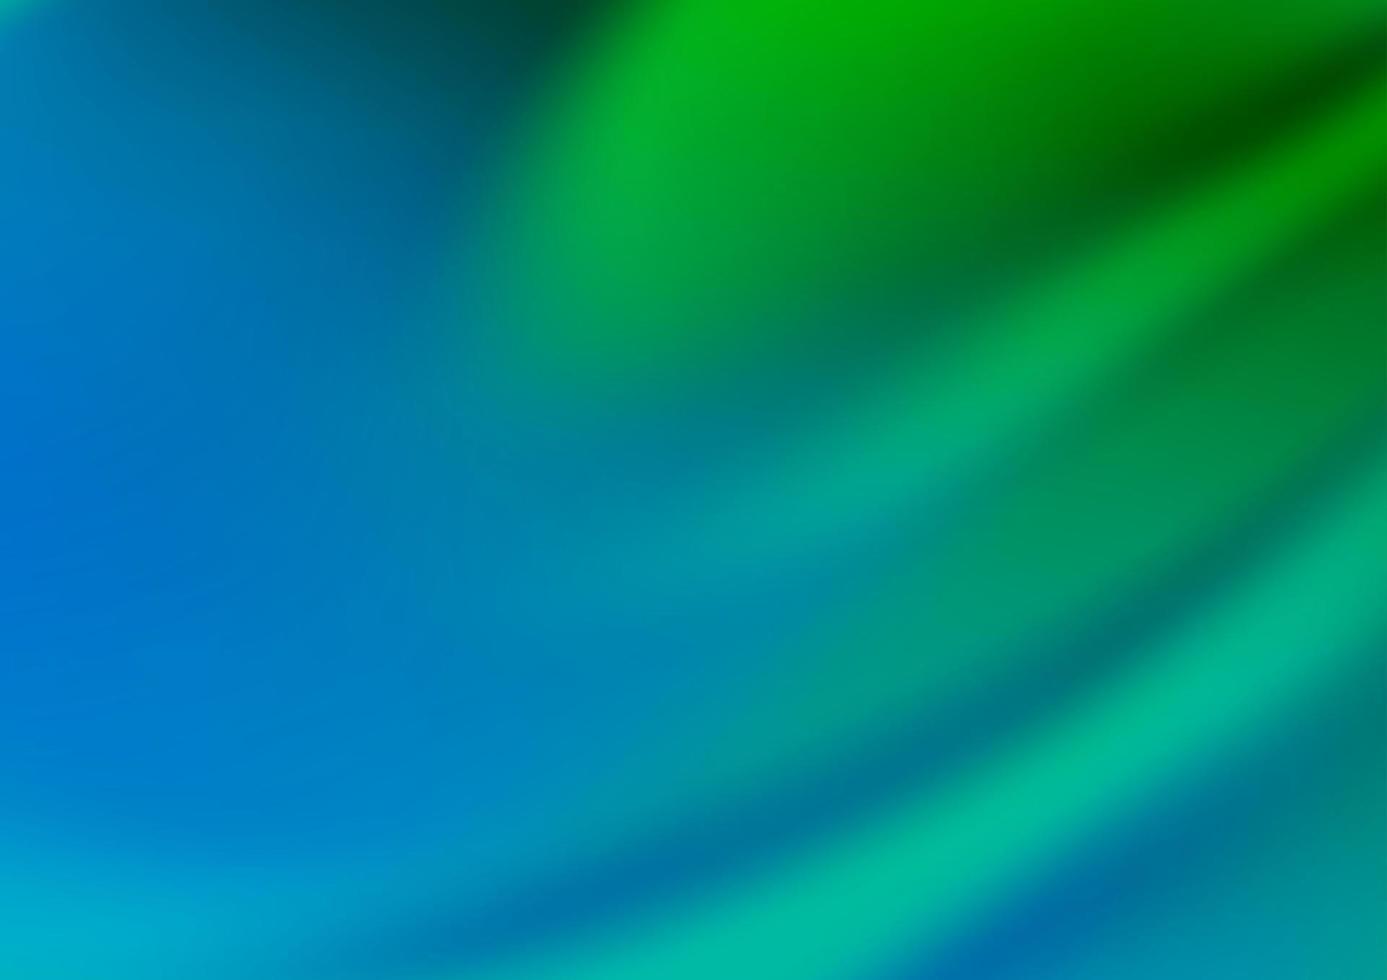 hellblauer, grüner Vektor verschwommener Glanz abstrakter Hintergrund.